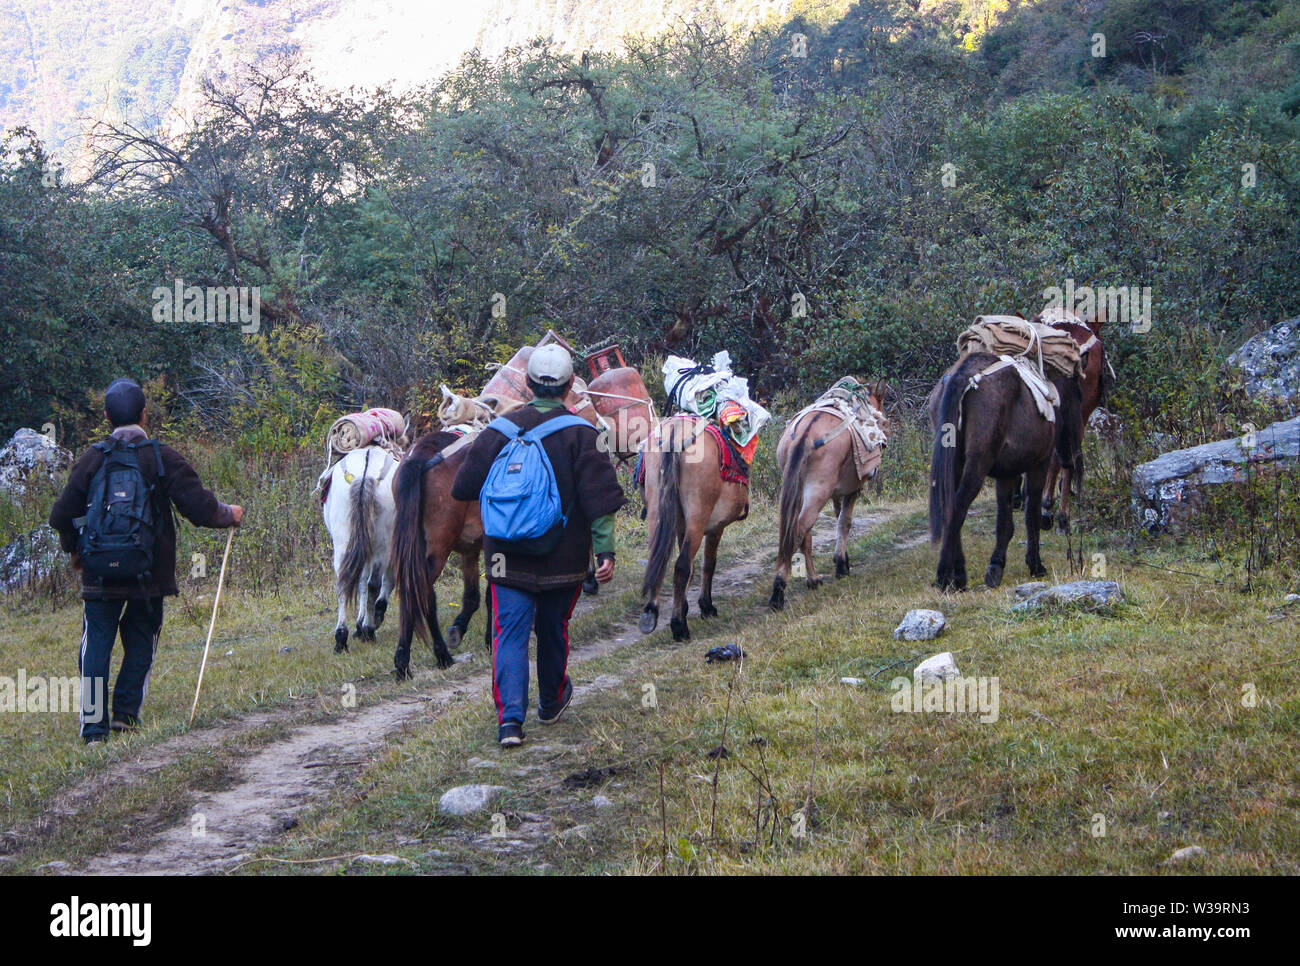 Les mules, les chevaux et l'âne comme moyen de transport. Ils sont surtout utilisés pour le transport de tous les jours des choses nécessaires en région de montagne. Banque D'Images